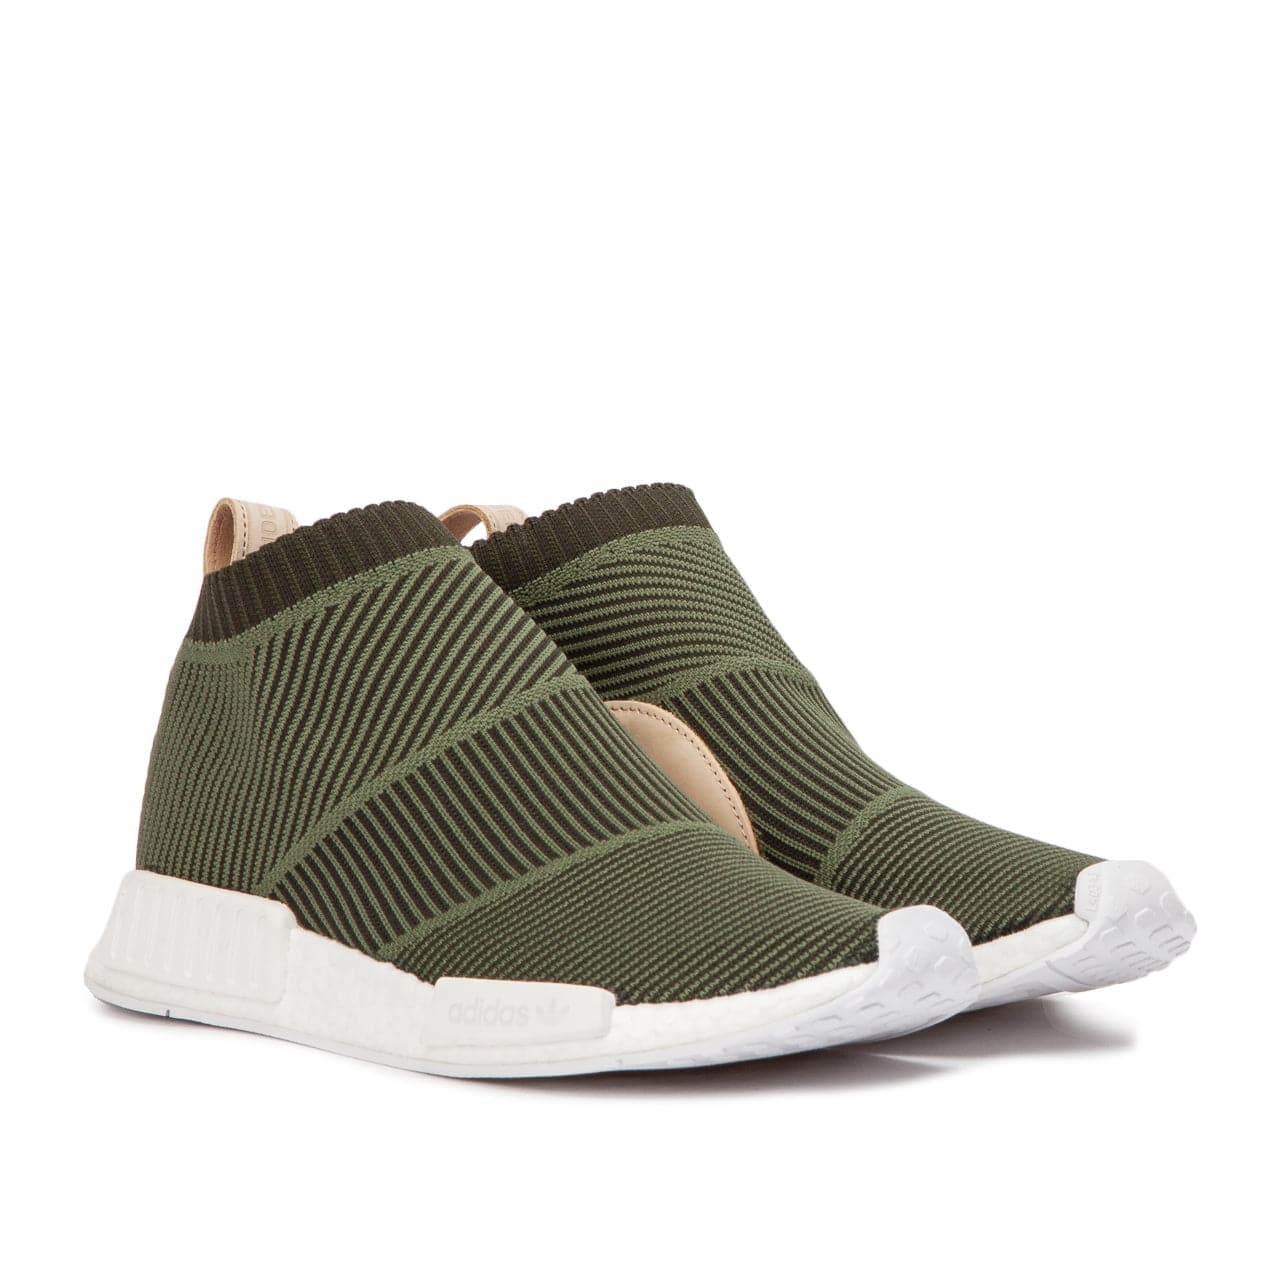 adidas CS1 Sock Primeknit (Olive / Leather) B37638 – Allike Store